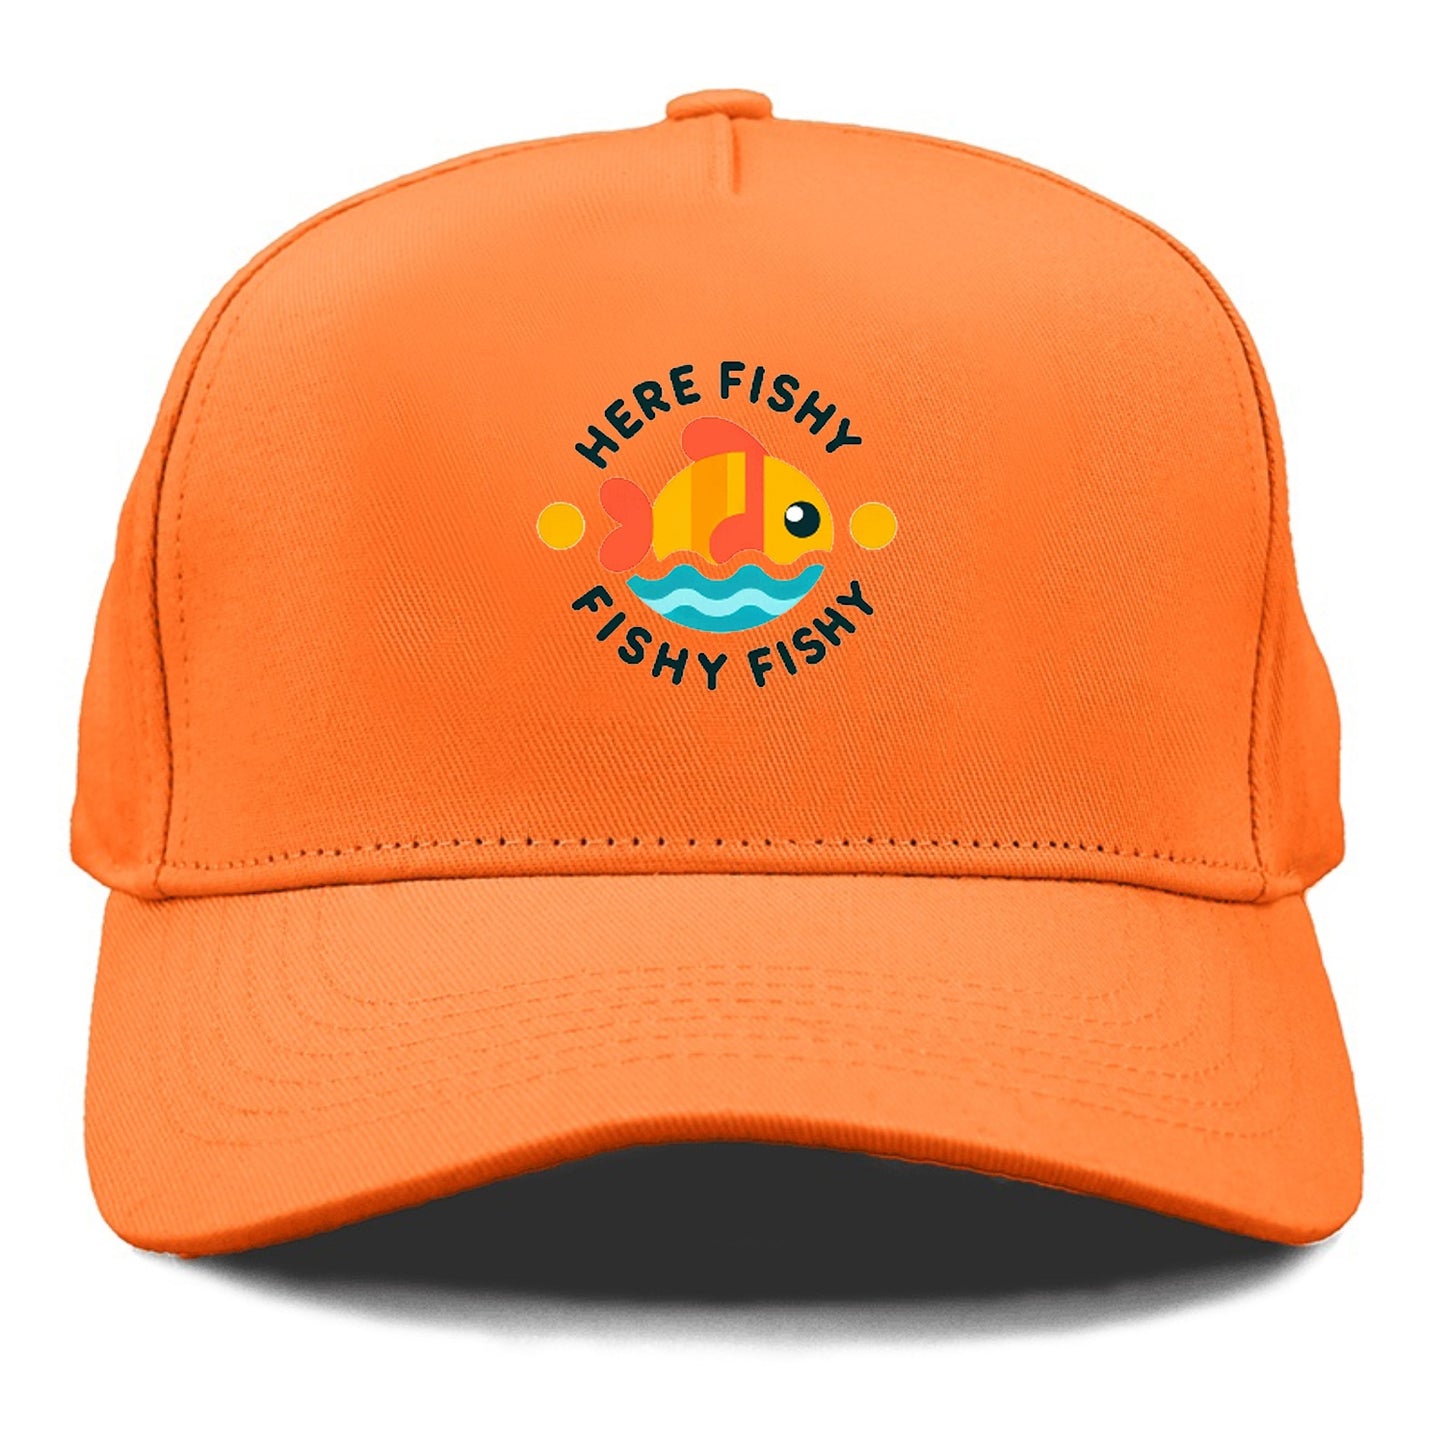 here fishy fishy fishy!!! Hat